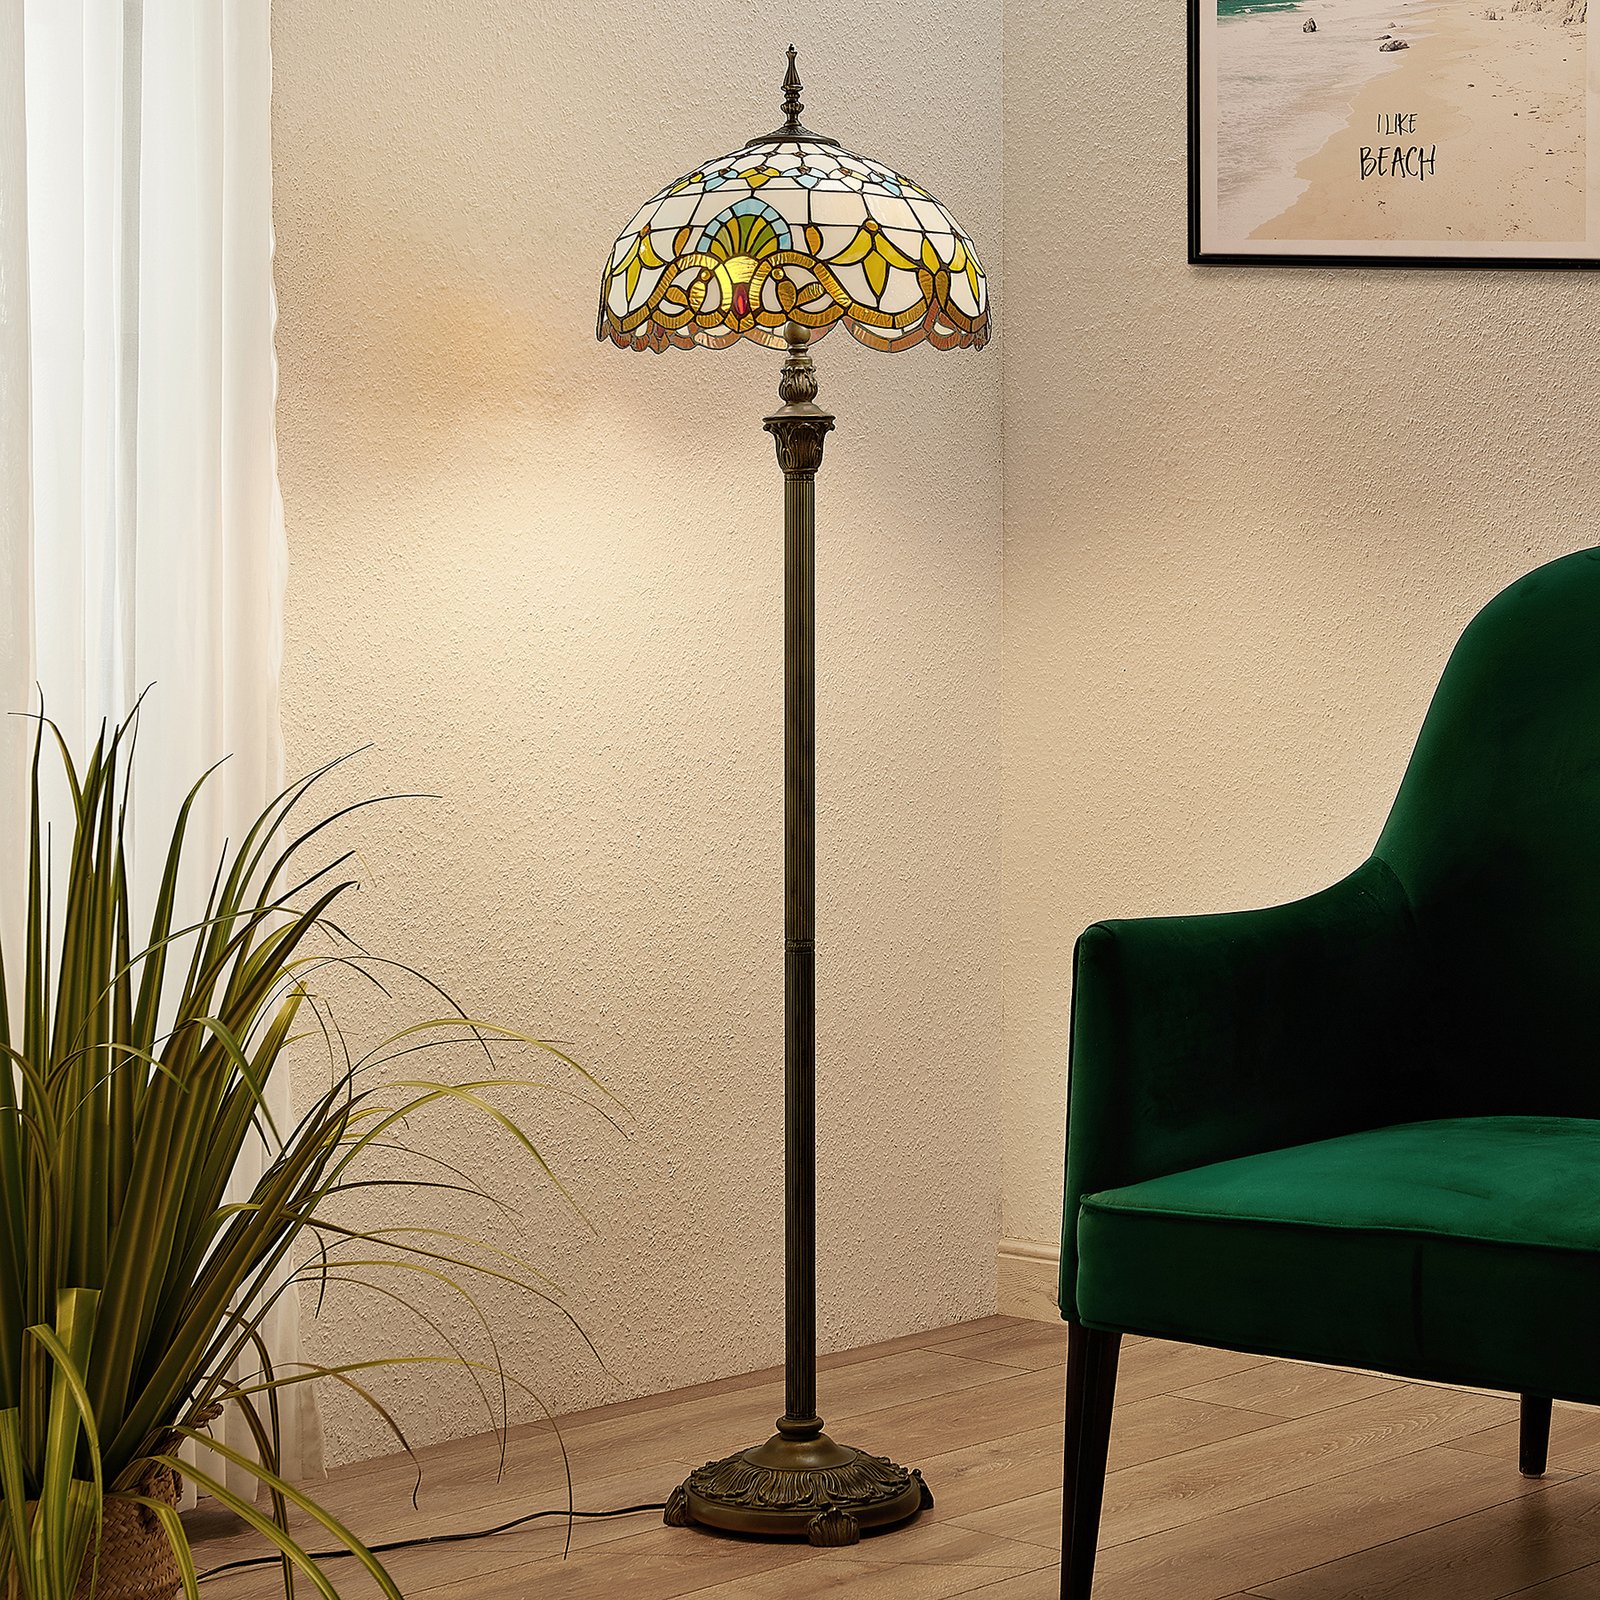 Blæse Bred rækkevidde forvridning Lindby Audrey gulvlampe i Tiffany-stil | Lampegiganten.dk